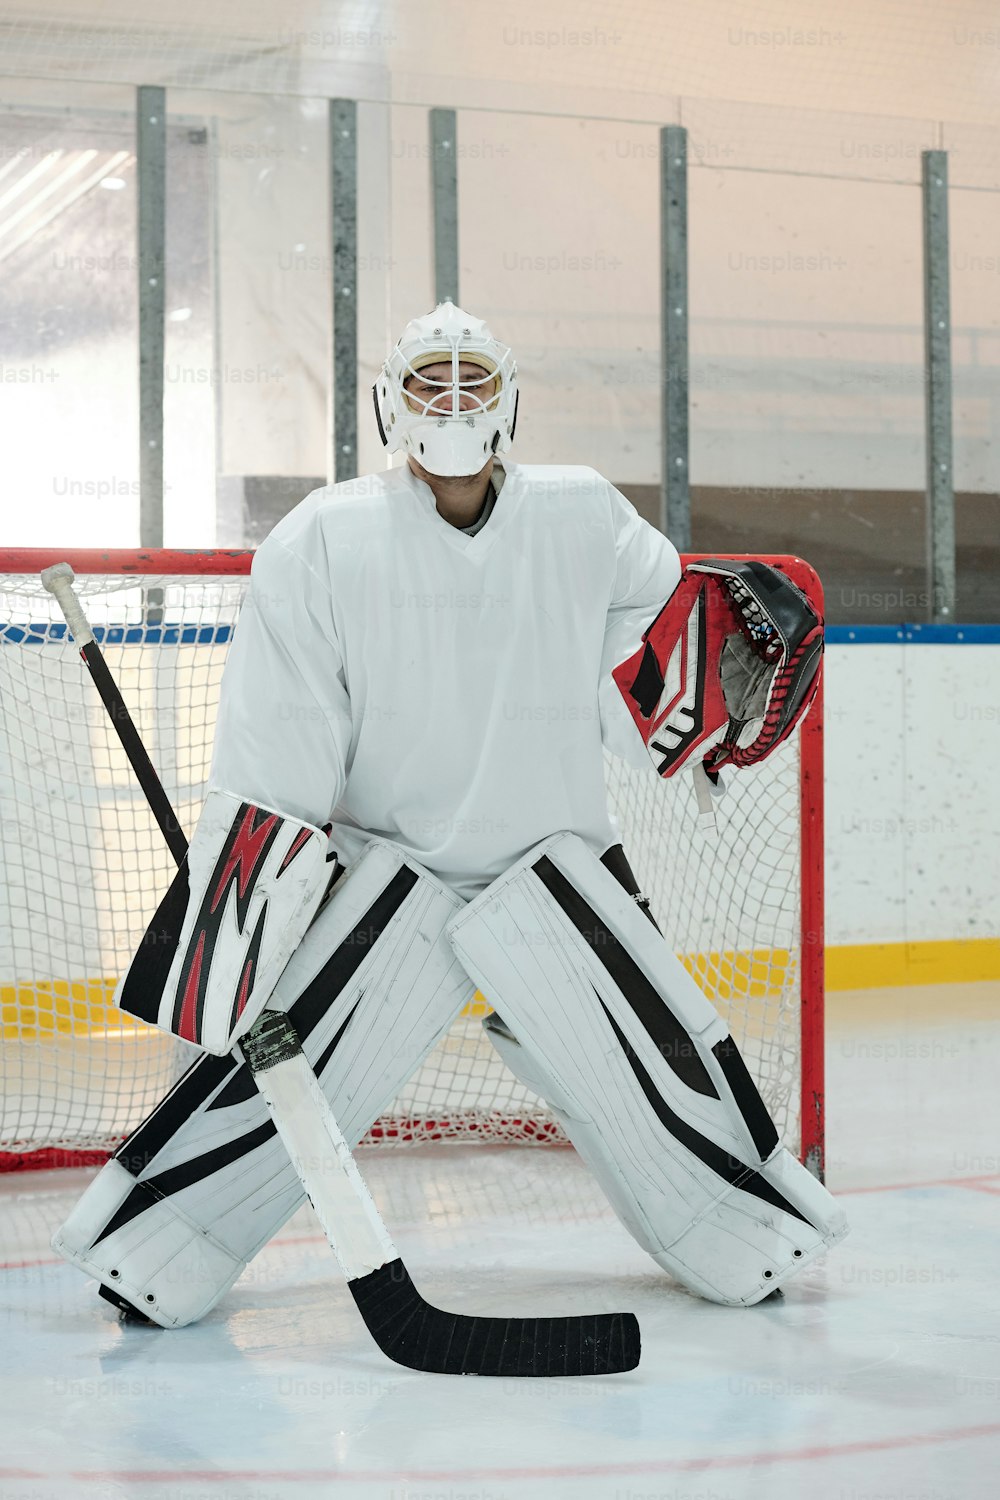 Zeitgenössischer Hockeyspieler in Sportuniform, Schutzhelm und Handschuhen, der den Stock hält, während er auf der Eisbahn gegen das Netz steht und auf den Puck wartet